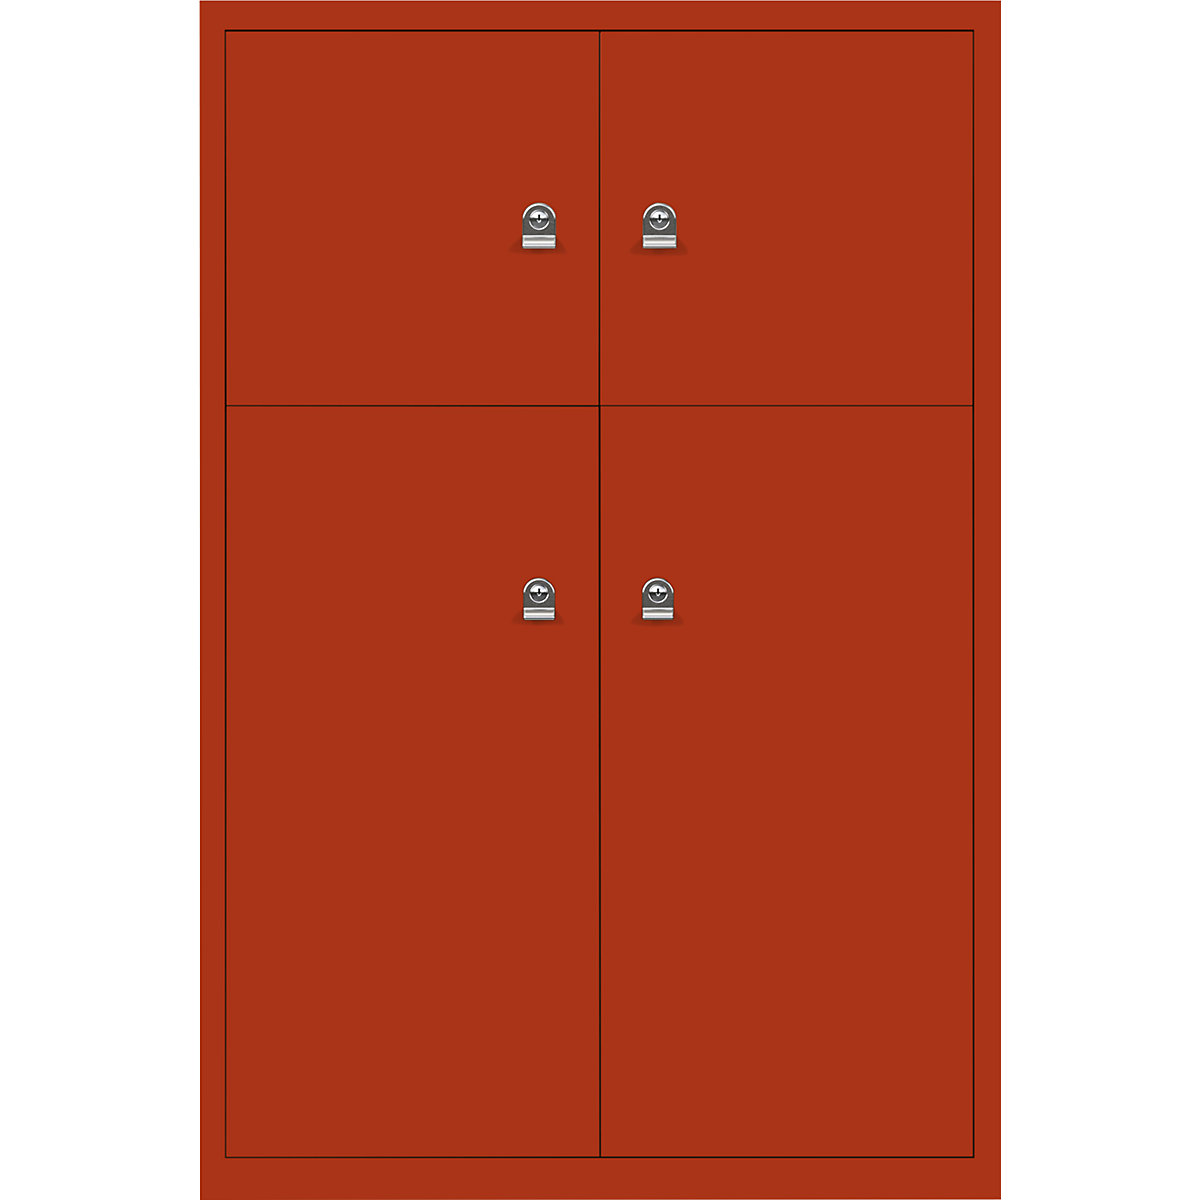 Omara s predelki z zaklepanjem LateralFile™ – BISLEY, 4 predelki z zaklepanjem, višina 2 x 375 mm, 2 x 755 mm, seviljsko rdeče barve-9